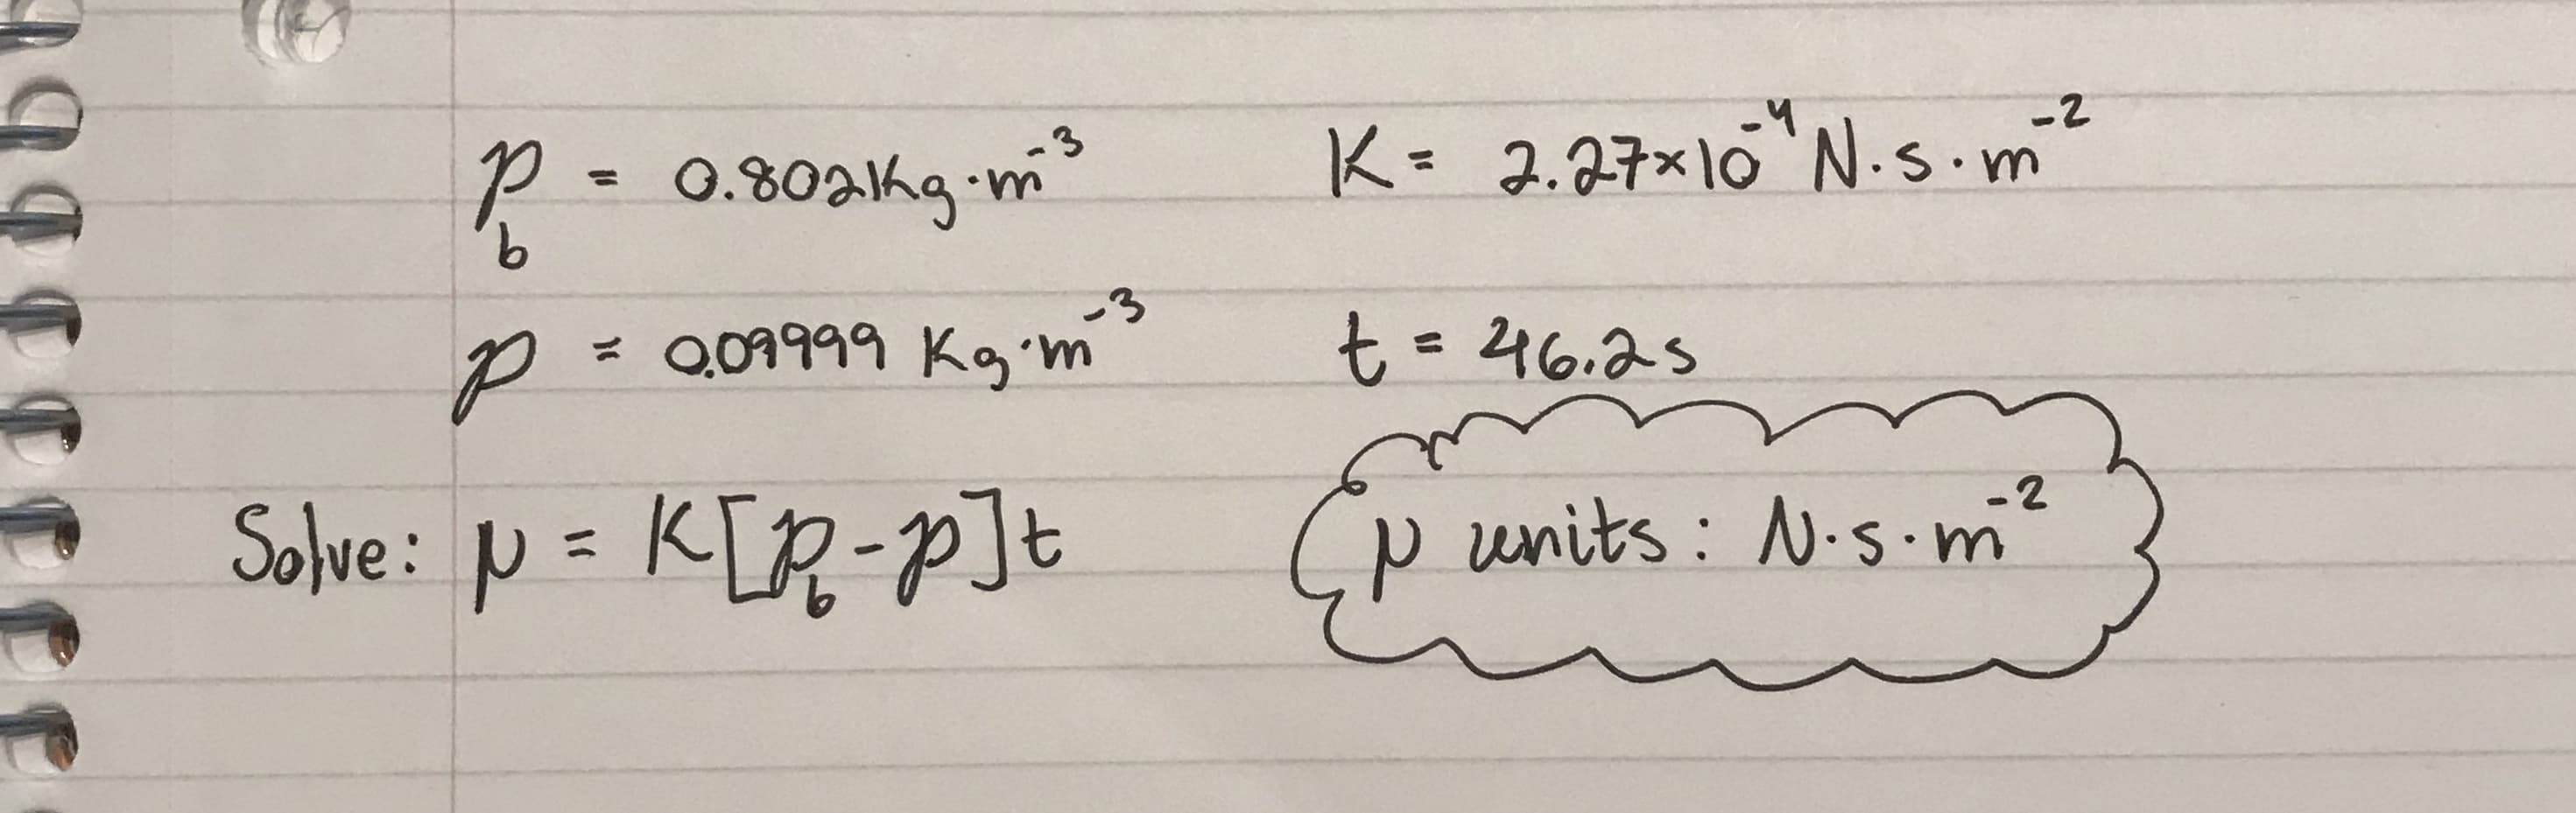 -2
.3
K= 2.27x10 N.s.m
P- 0.80a1kg-m
9,
%3D
-3
= Q09999 Kim
346.25
Solve: p = K[R-P]t
(p units: N.s.m²
